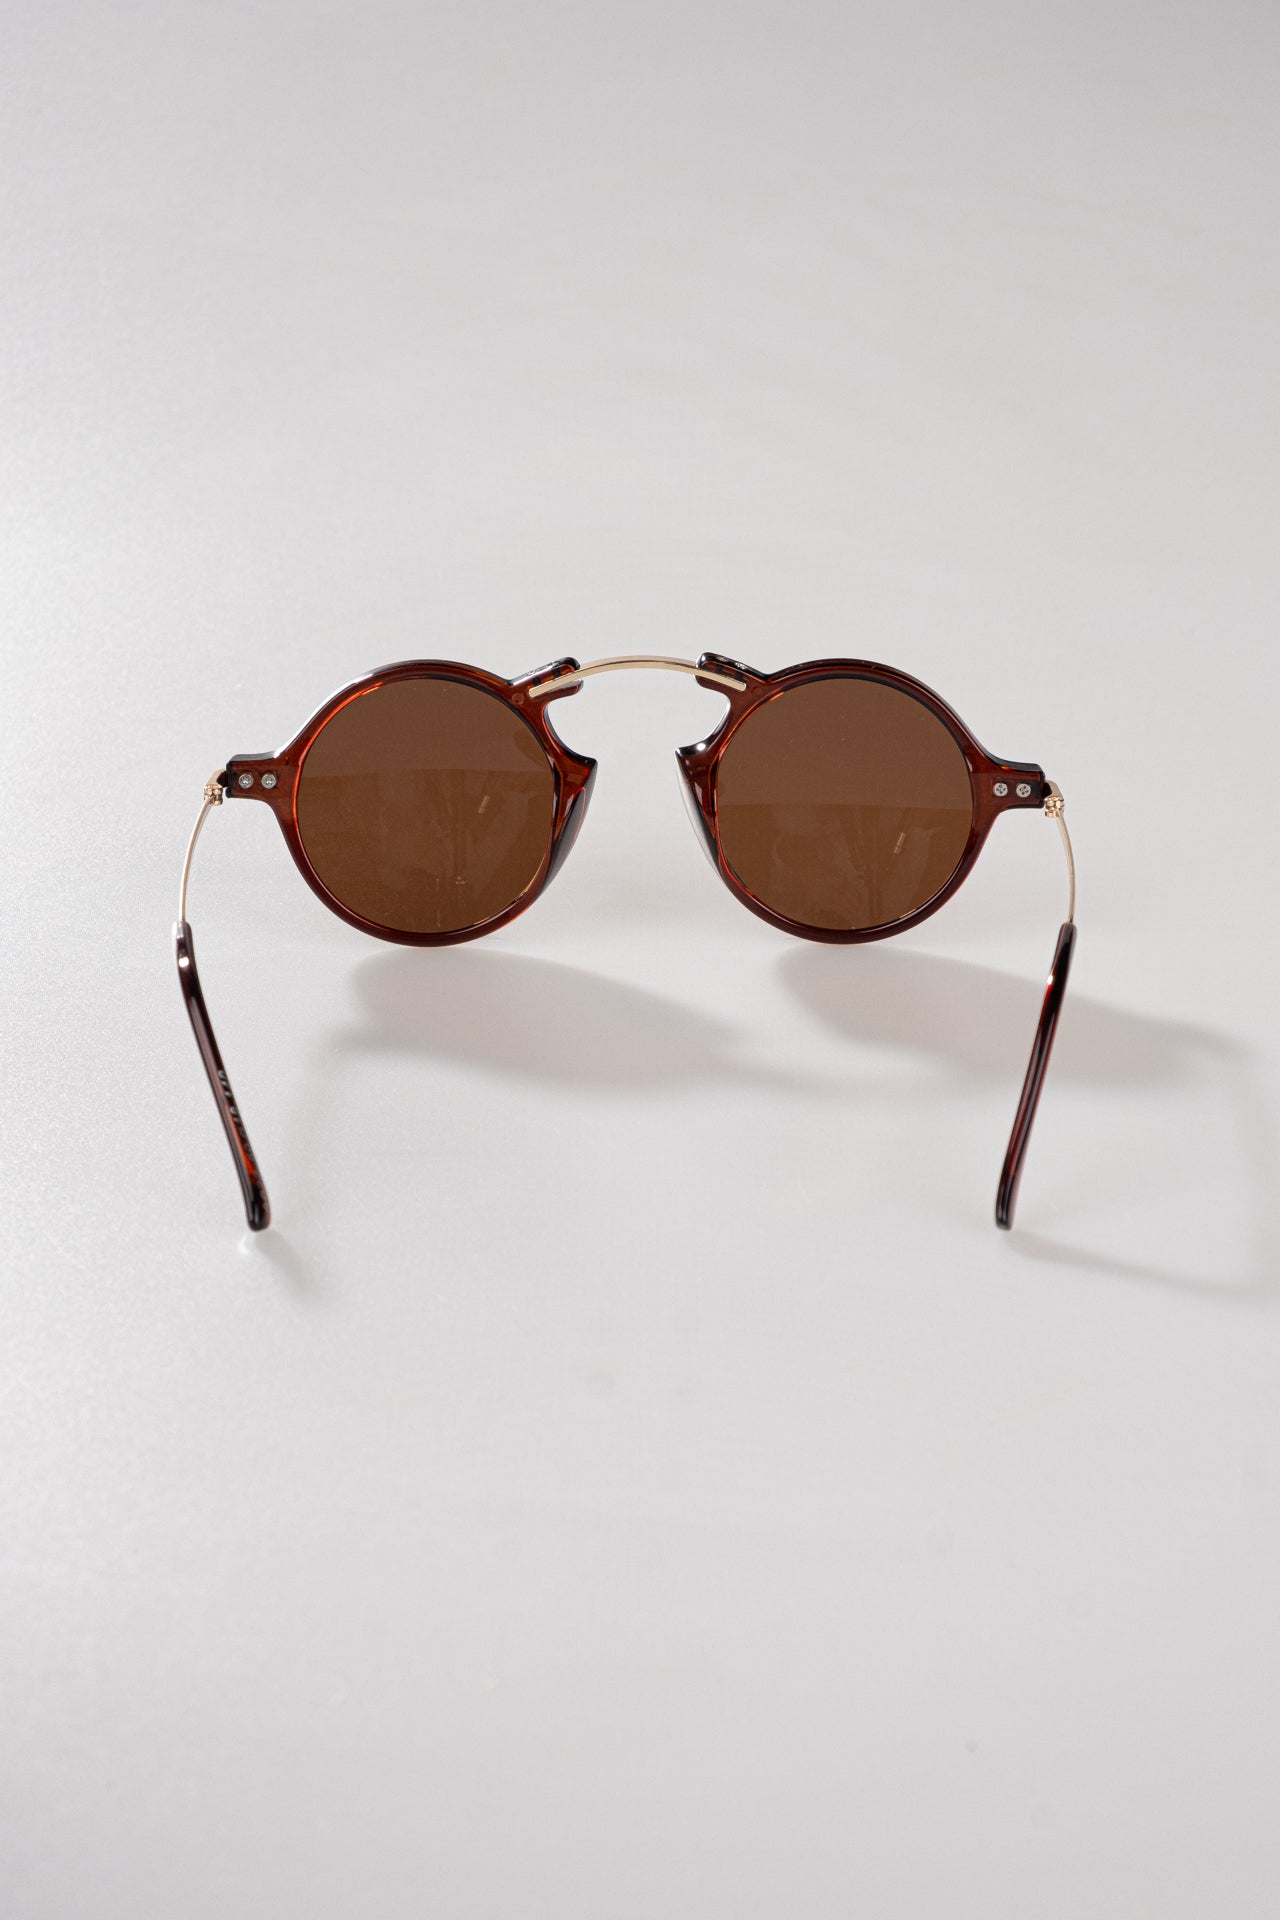 Vampire punk personality sunglasses small square glasses - CX187Q4R4KD